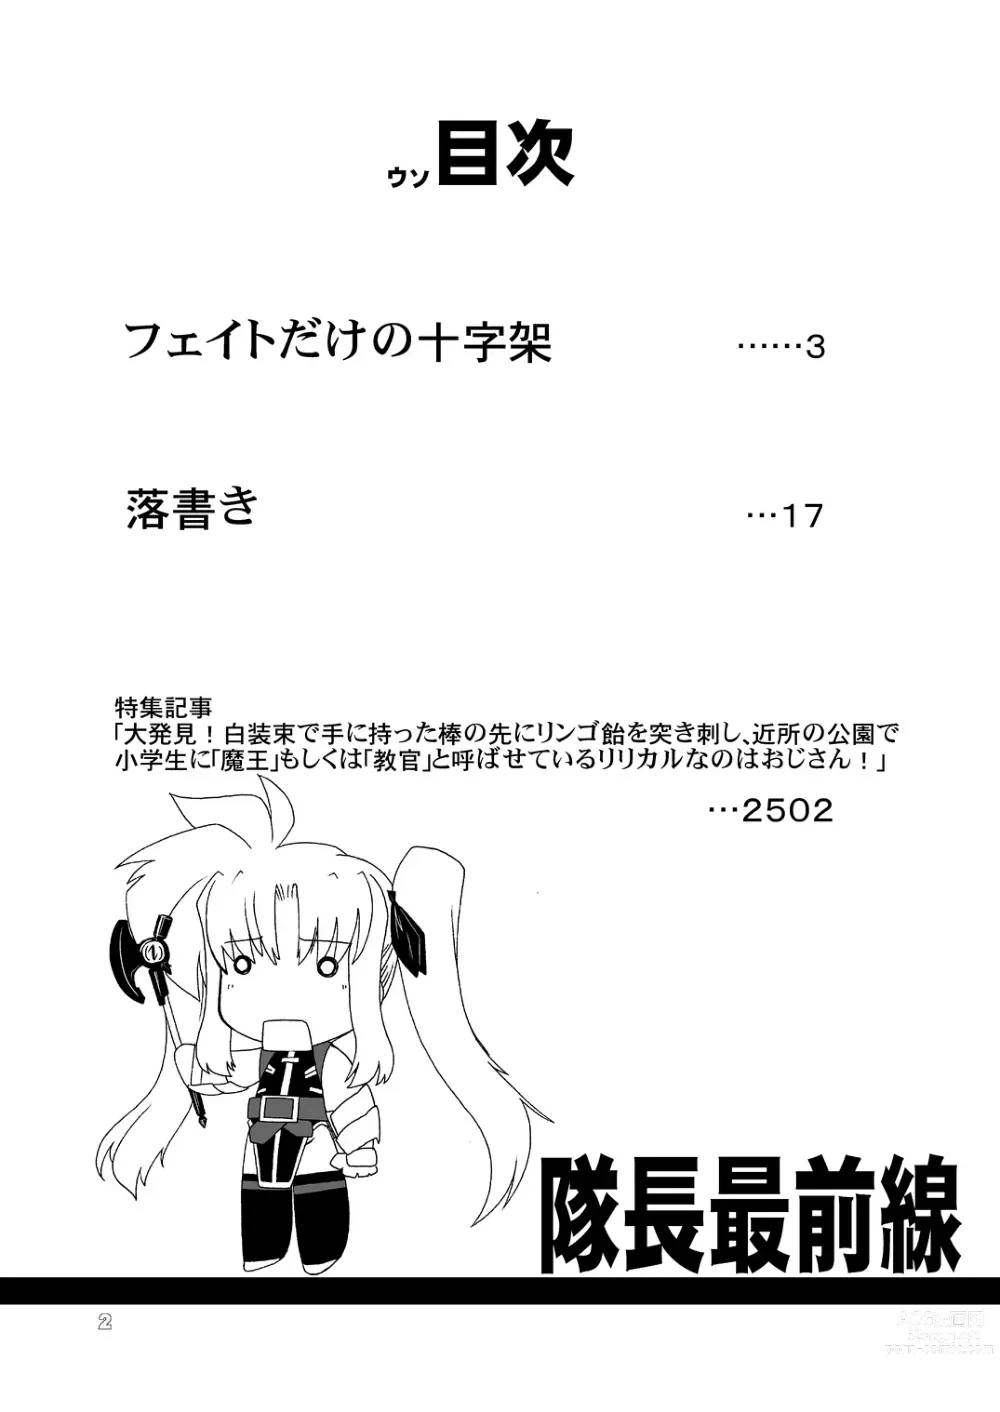 Page 3 of doujinshi Taichou Saizensen